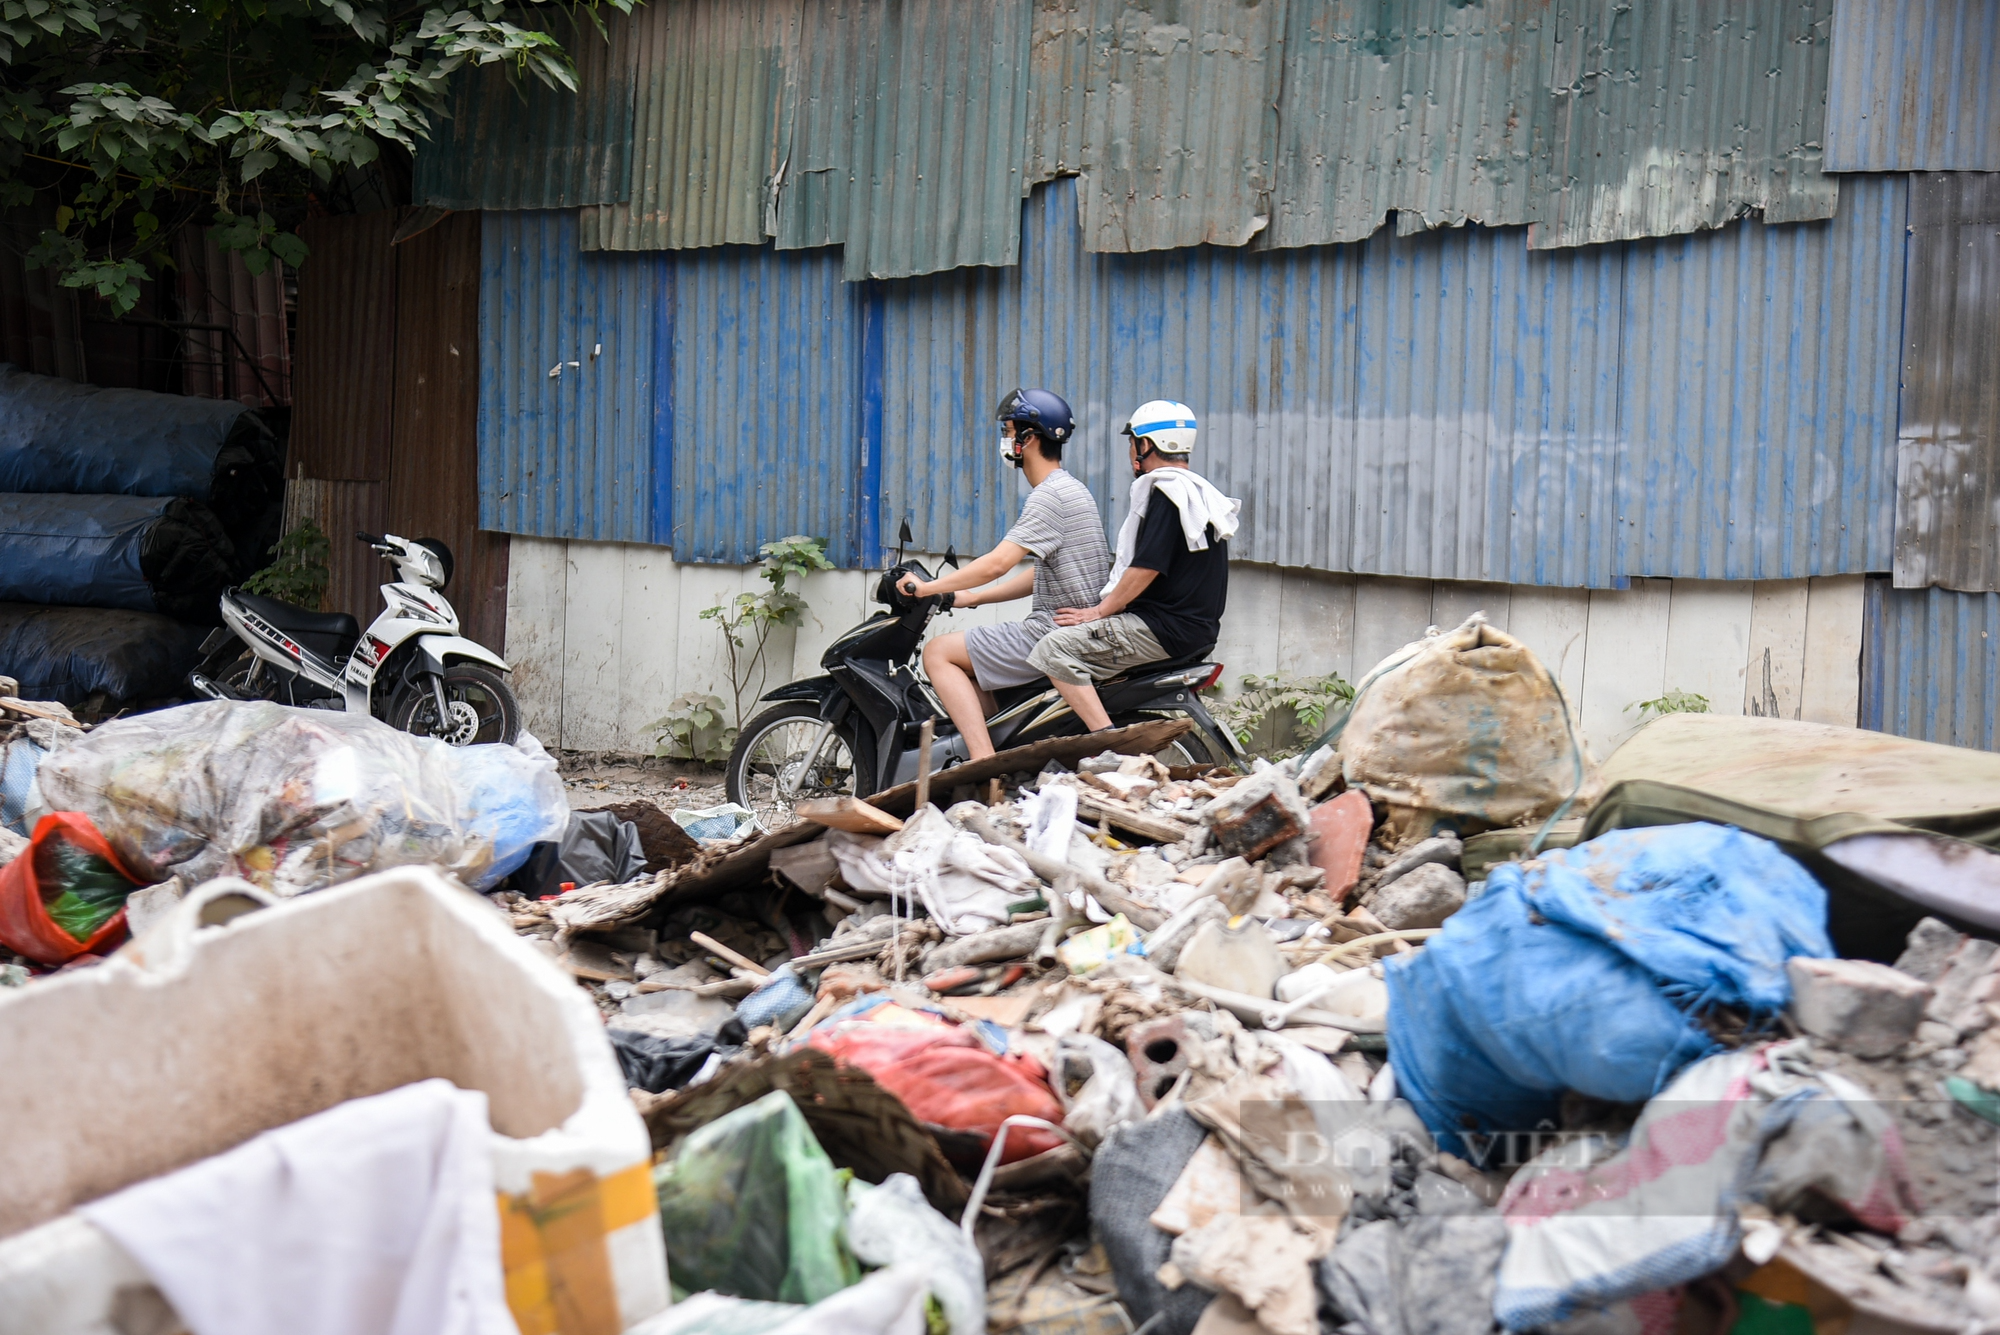 Ngang nhiên đổ rác thải xây dựng giữa ban ngày trong khu dân cư - Ảnh 12.